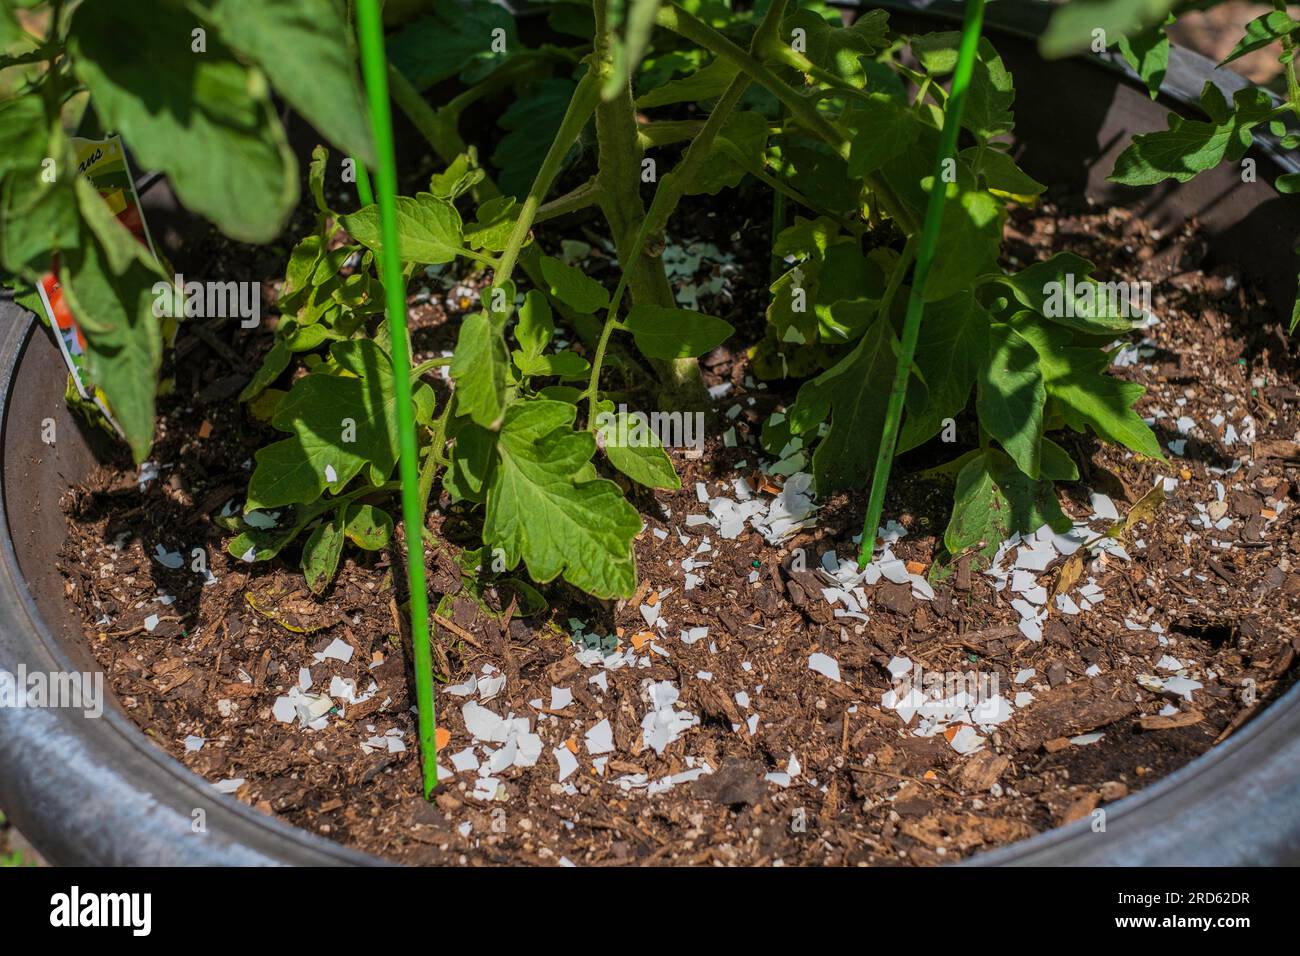 Cultiver des tomates dans des pots avec des coquilles d'œufs écrasées fournissant du calcium à la plante. Banque D'Images